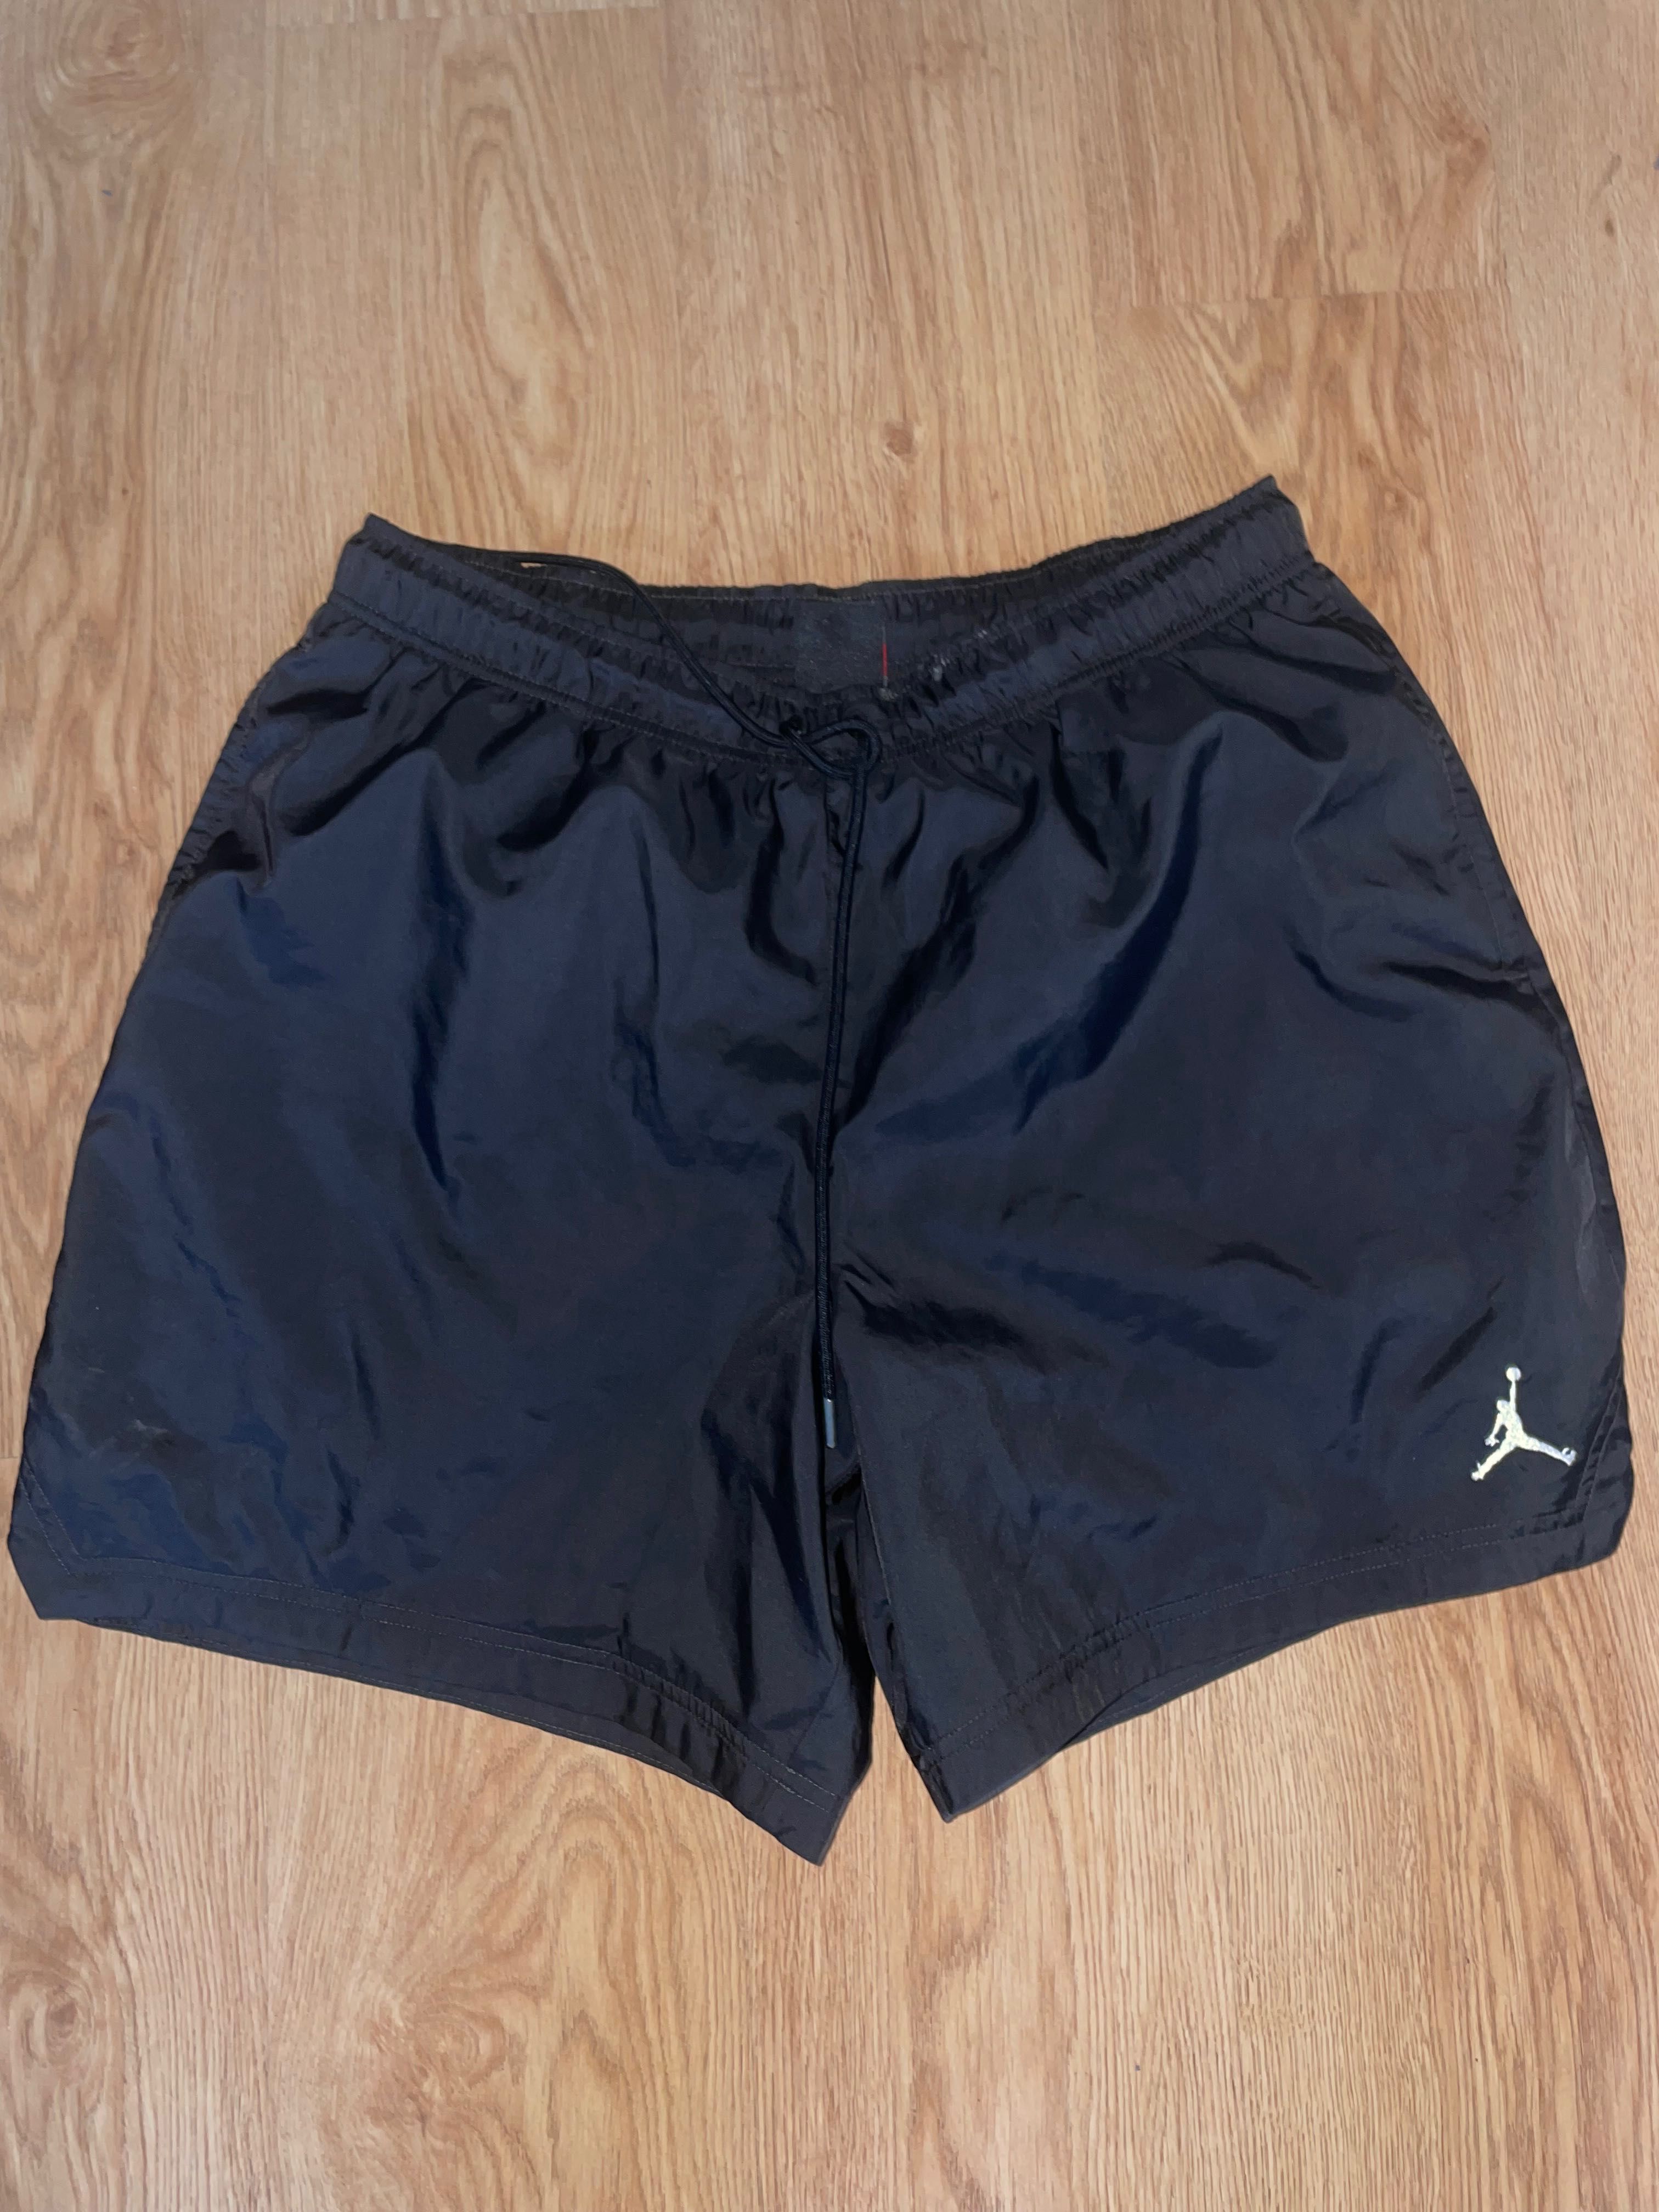 Jordan shorts tamanho xxl